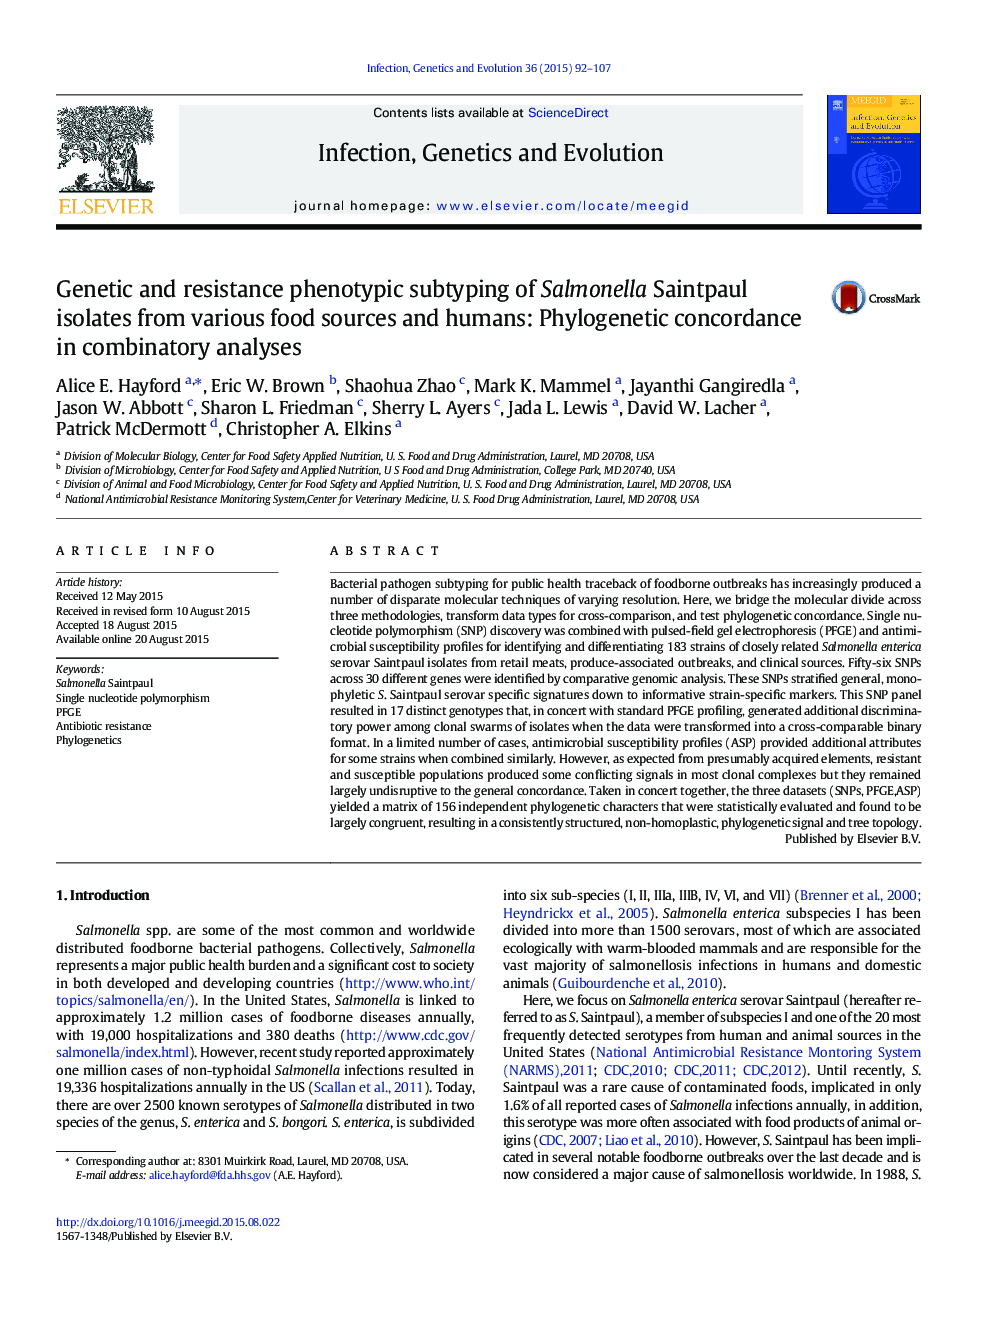 تعیین ژنتیک و مقاومت فنوتیپی جدایه های سالمونلا سنپائول از منابع غذایی و انسانی مختلف: سازگاری فیلوژنی در تحلیل ترکیبی 